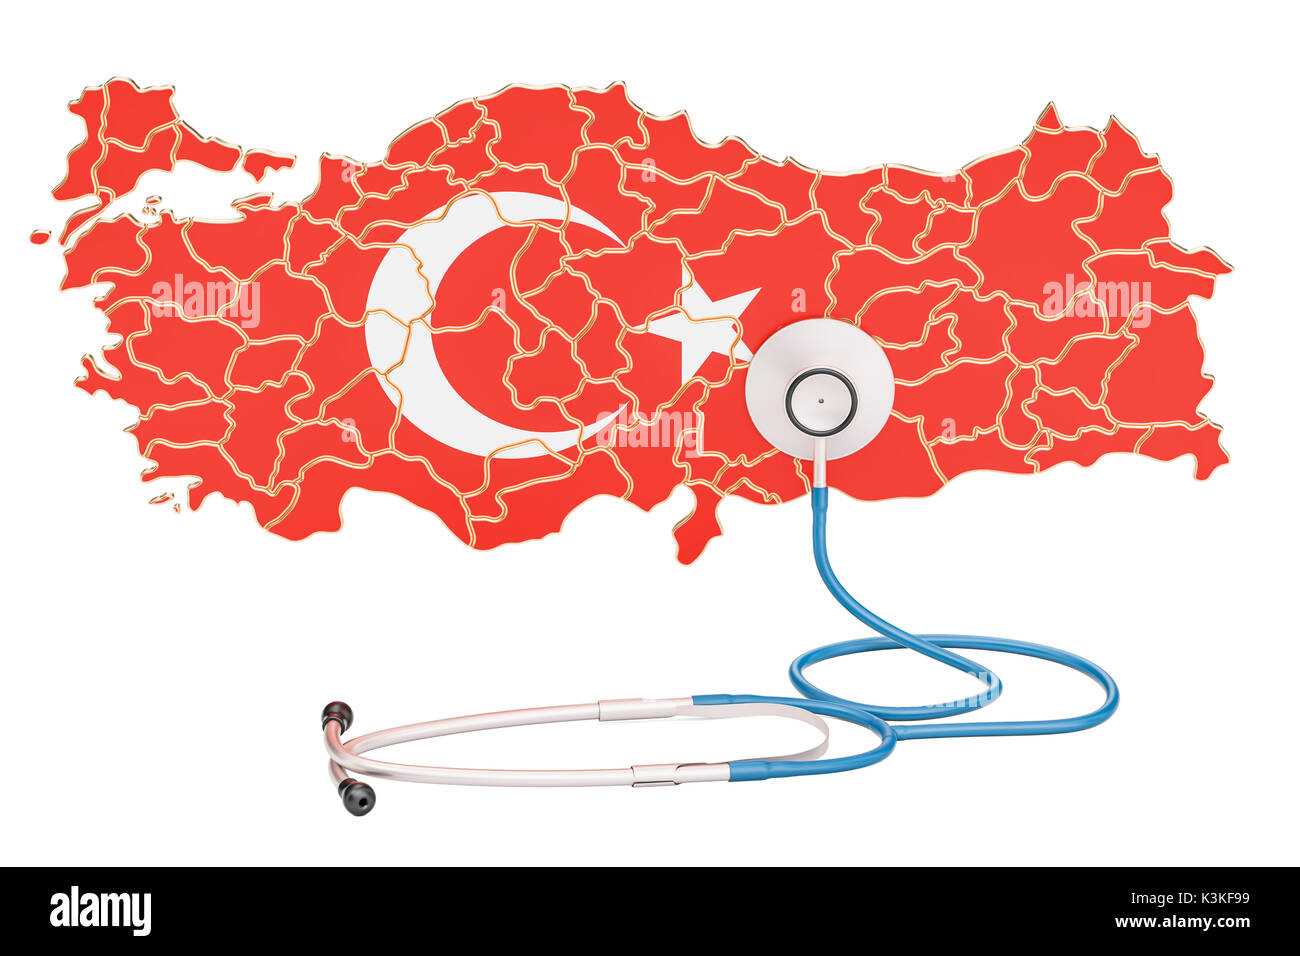 Türkische Karte mit Stethoskop, national Health Care Concept, 3D-Rendering Stockfoto